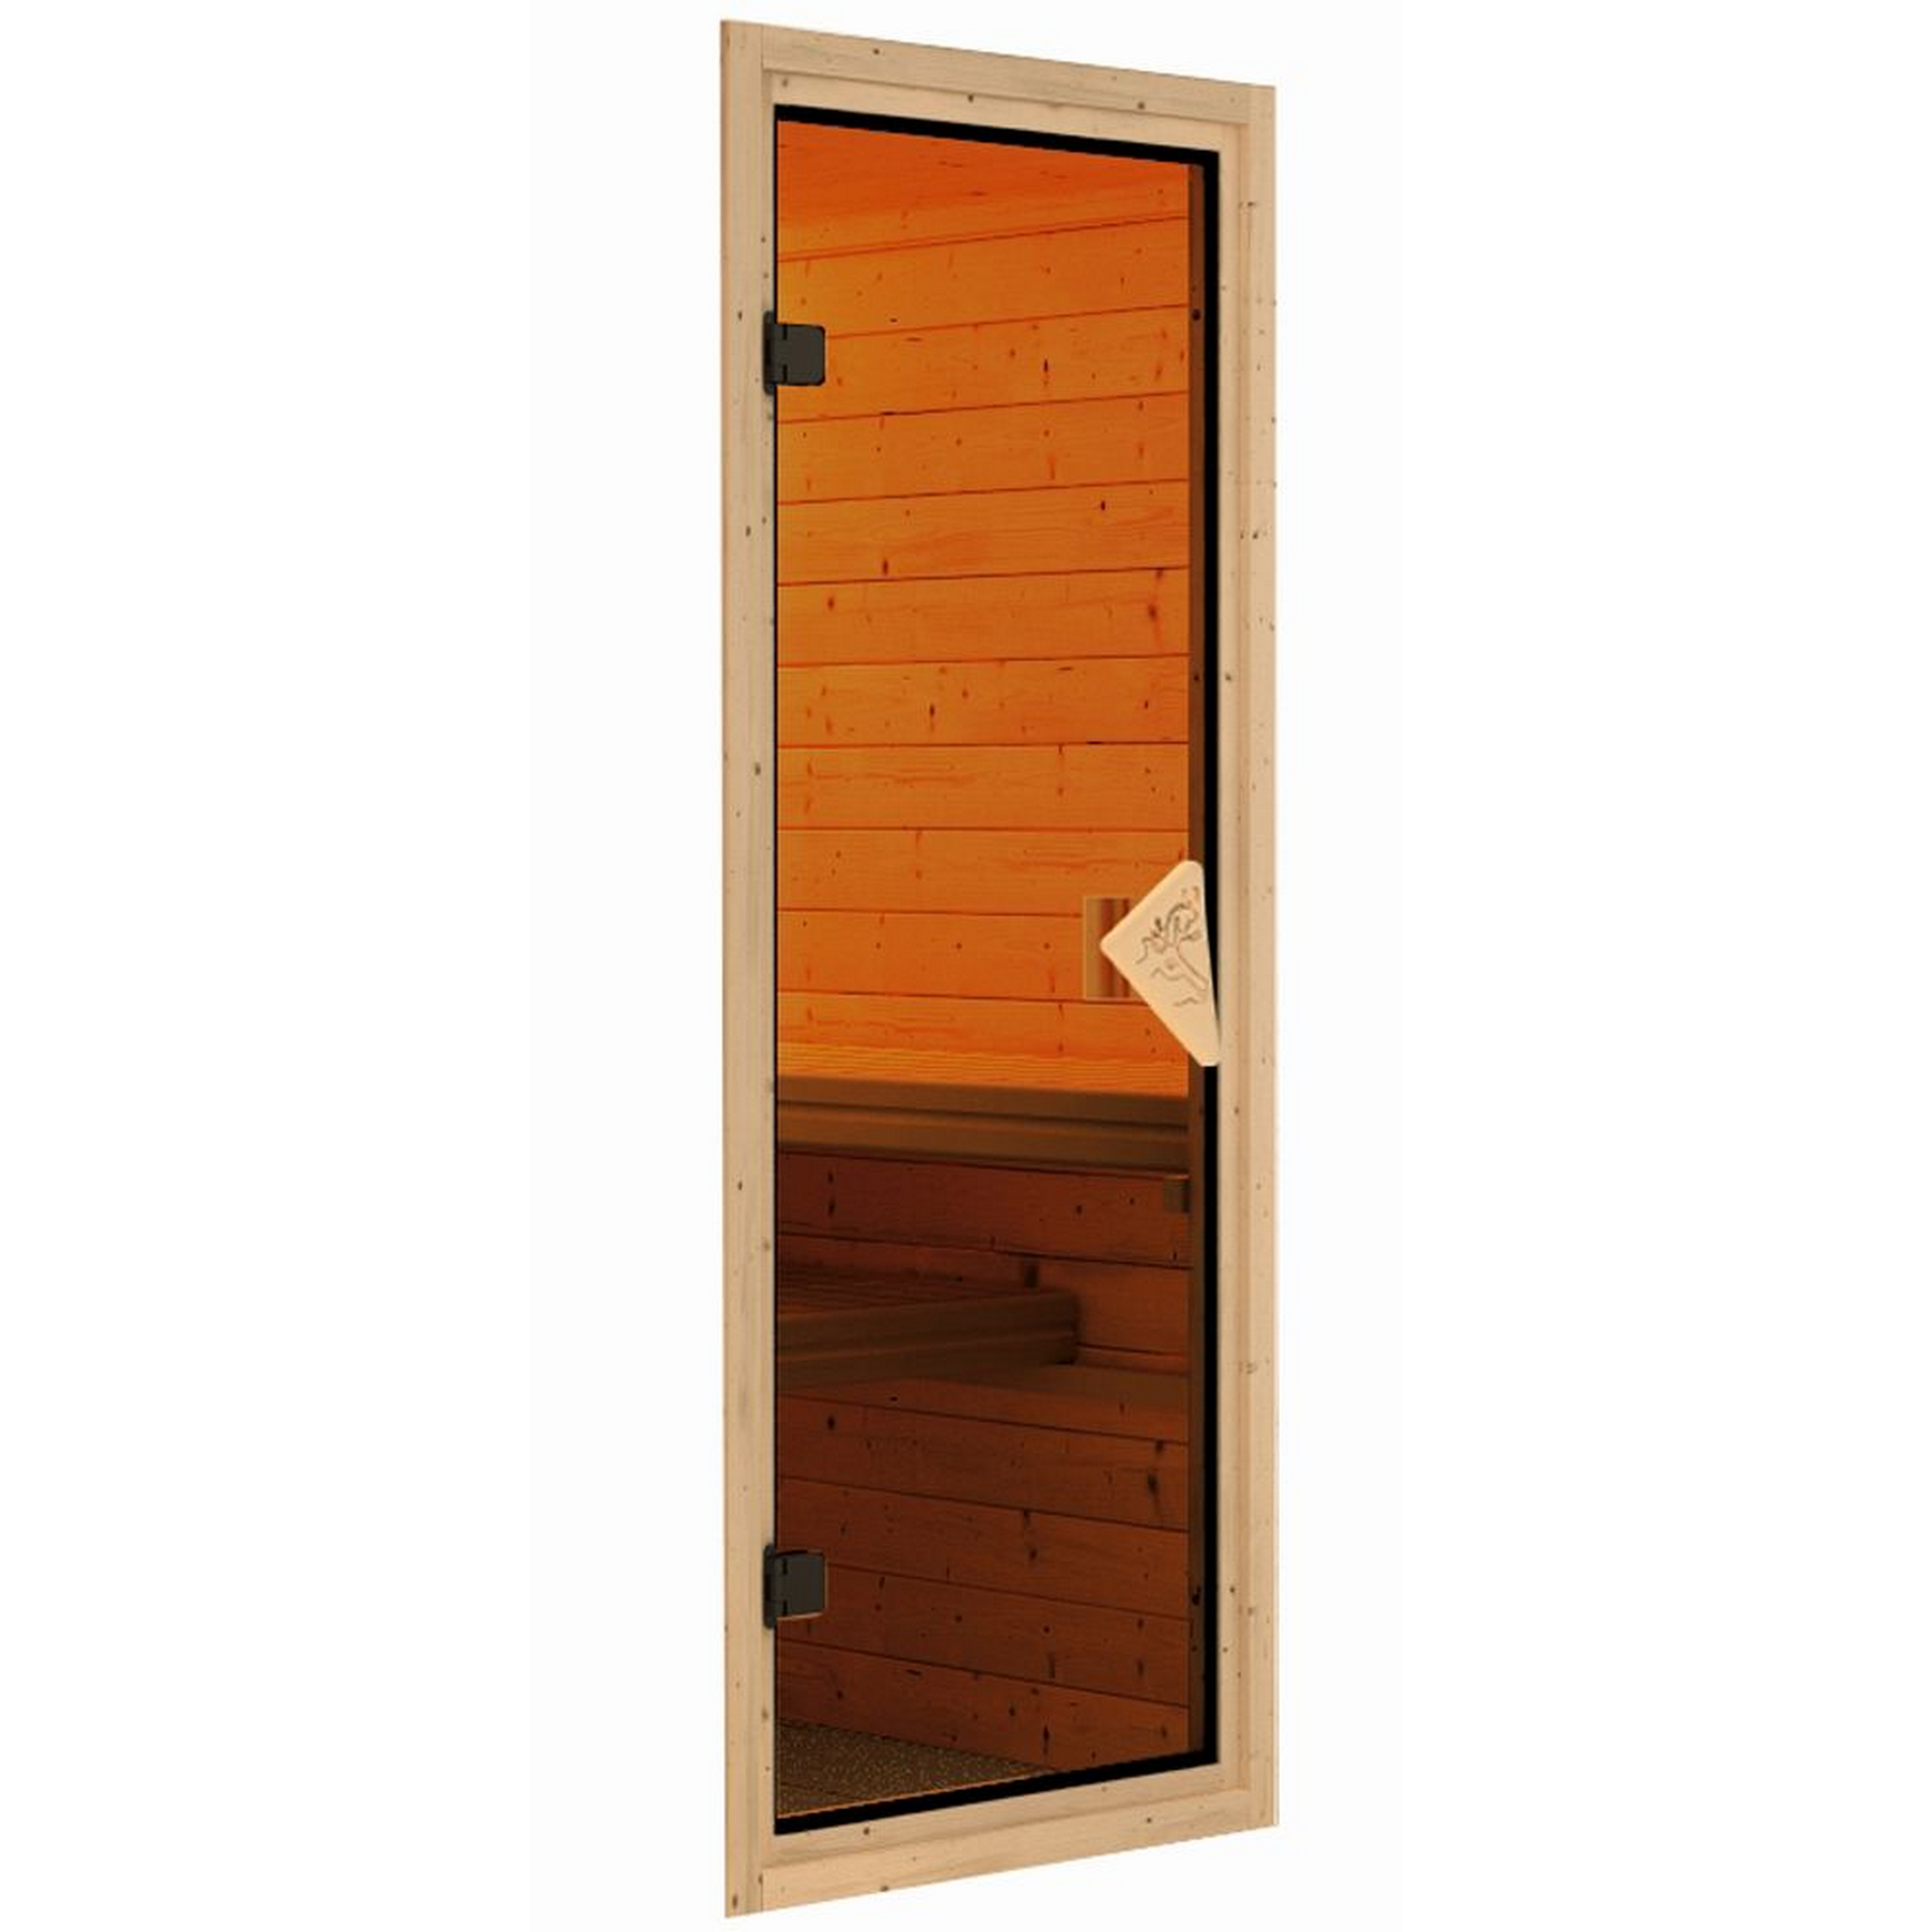 Sauna-Ganzglastür ESG klar bronziert 65,6 x 175 cm, Massivholzrahmen natur 68 mm + product picture